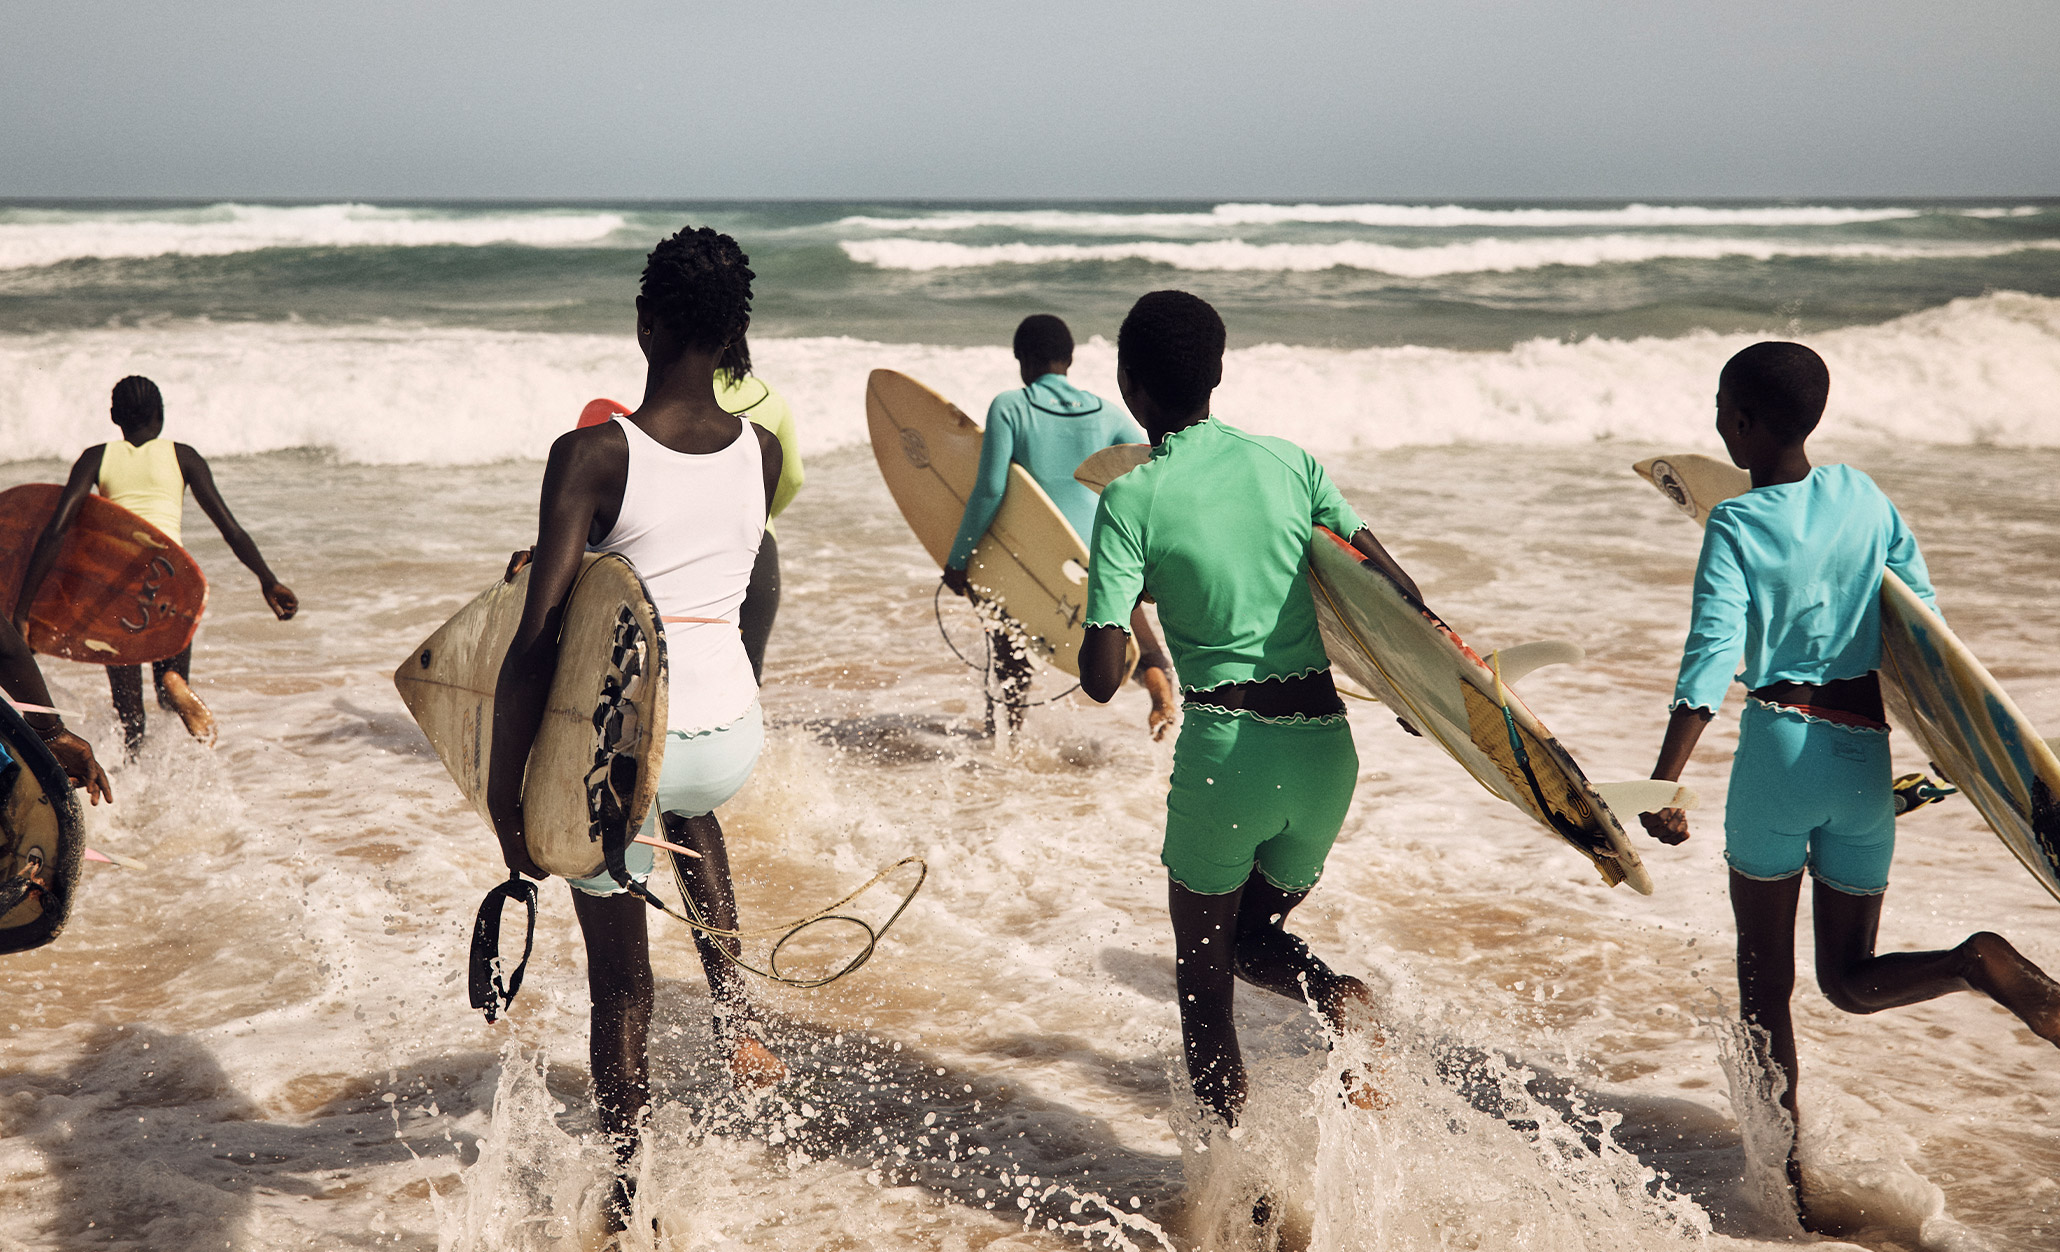 The Surfer Girls of Senegal